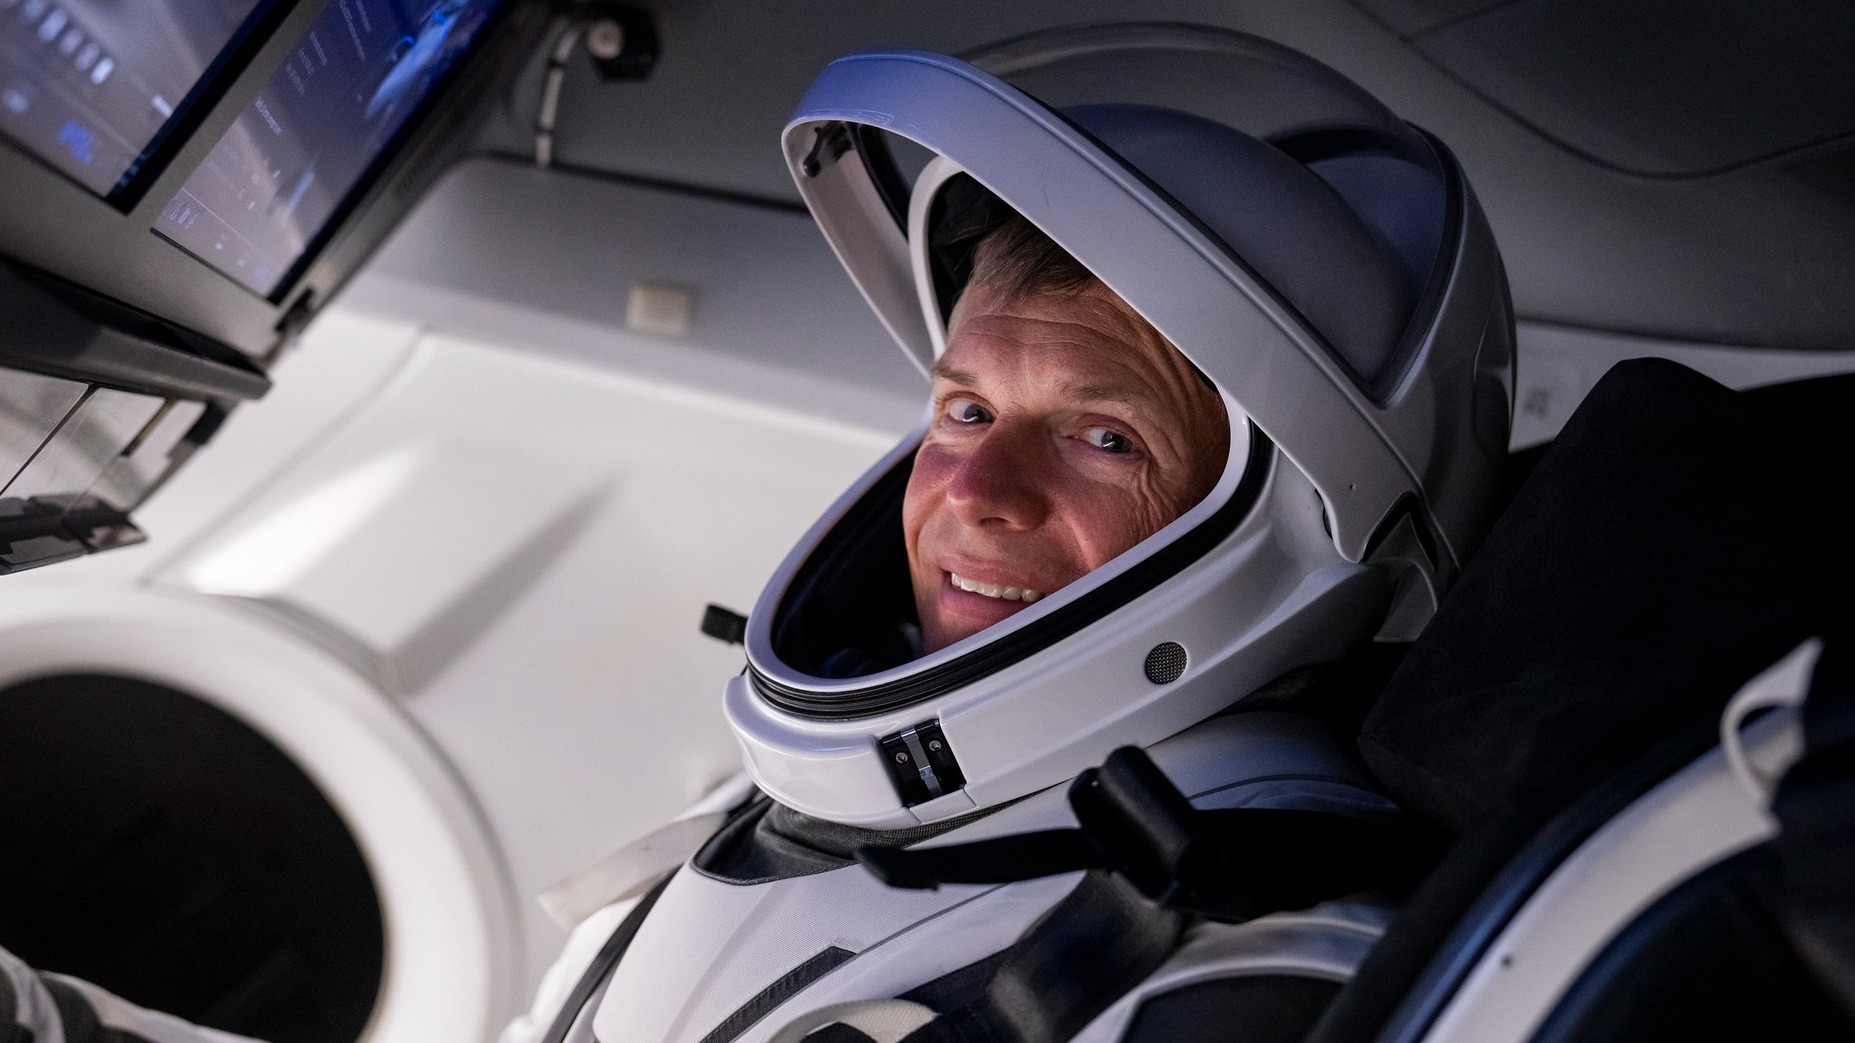 Andreas Mogensen en un traje espacial se sienta en una nave espacial, mira a la cámara y sonríe.  Las pantallas son visibles en la parte superior izquierda de la imagen.